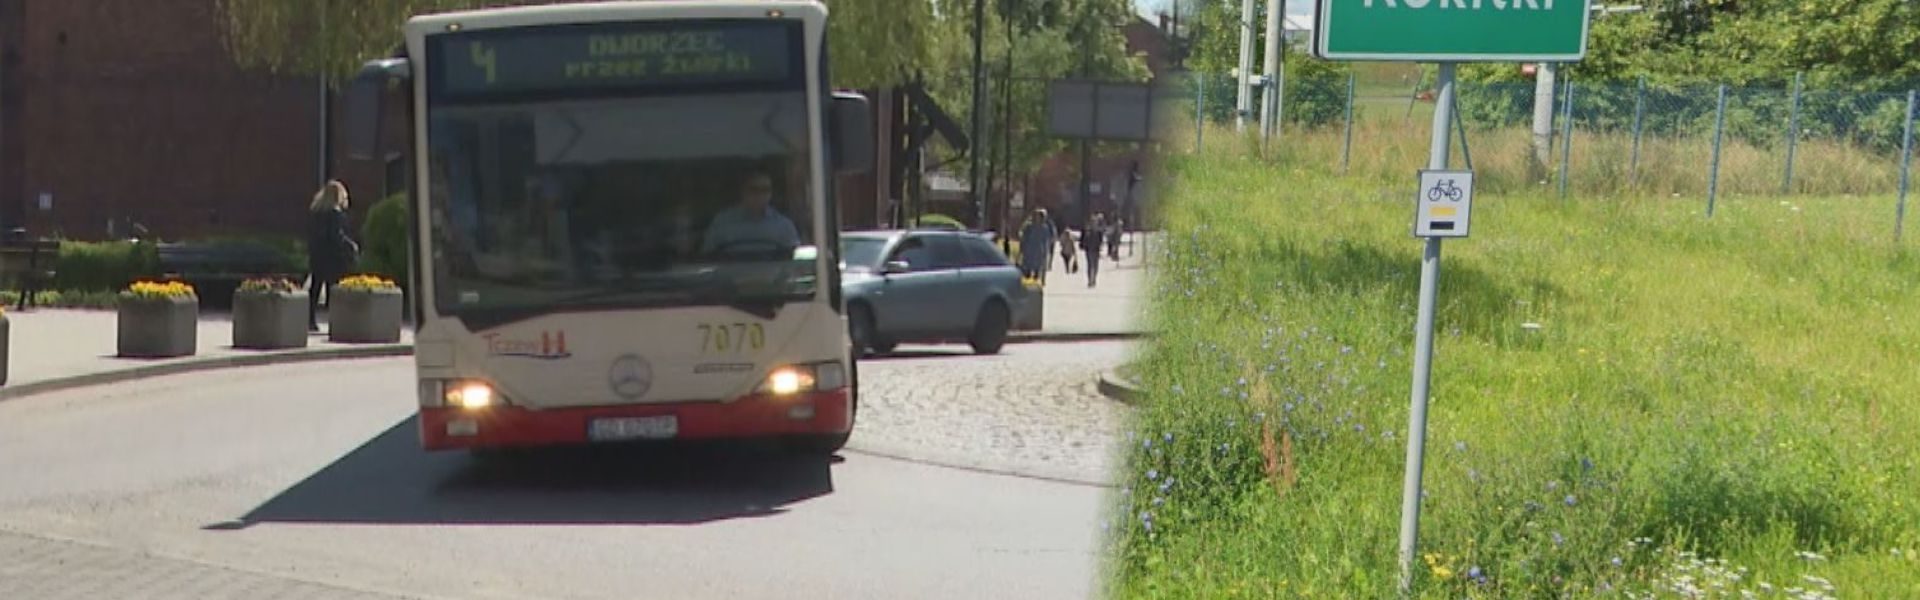 Powstaną linie autobusowe do Rokitek i Lubiszewa?